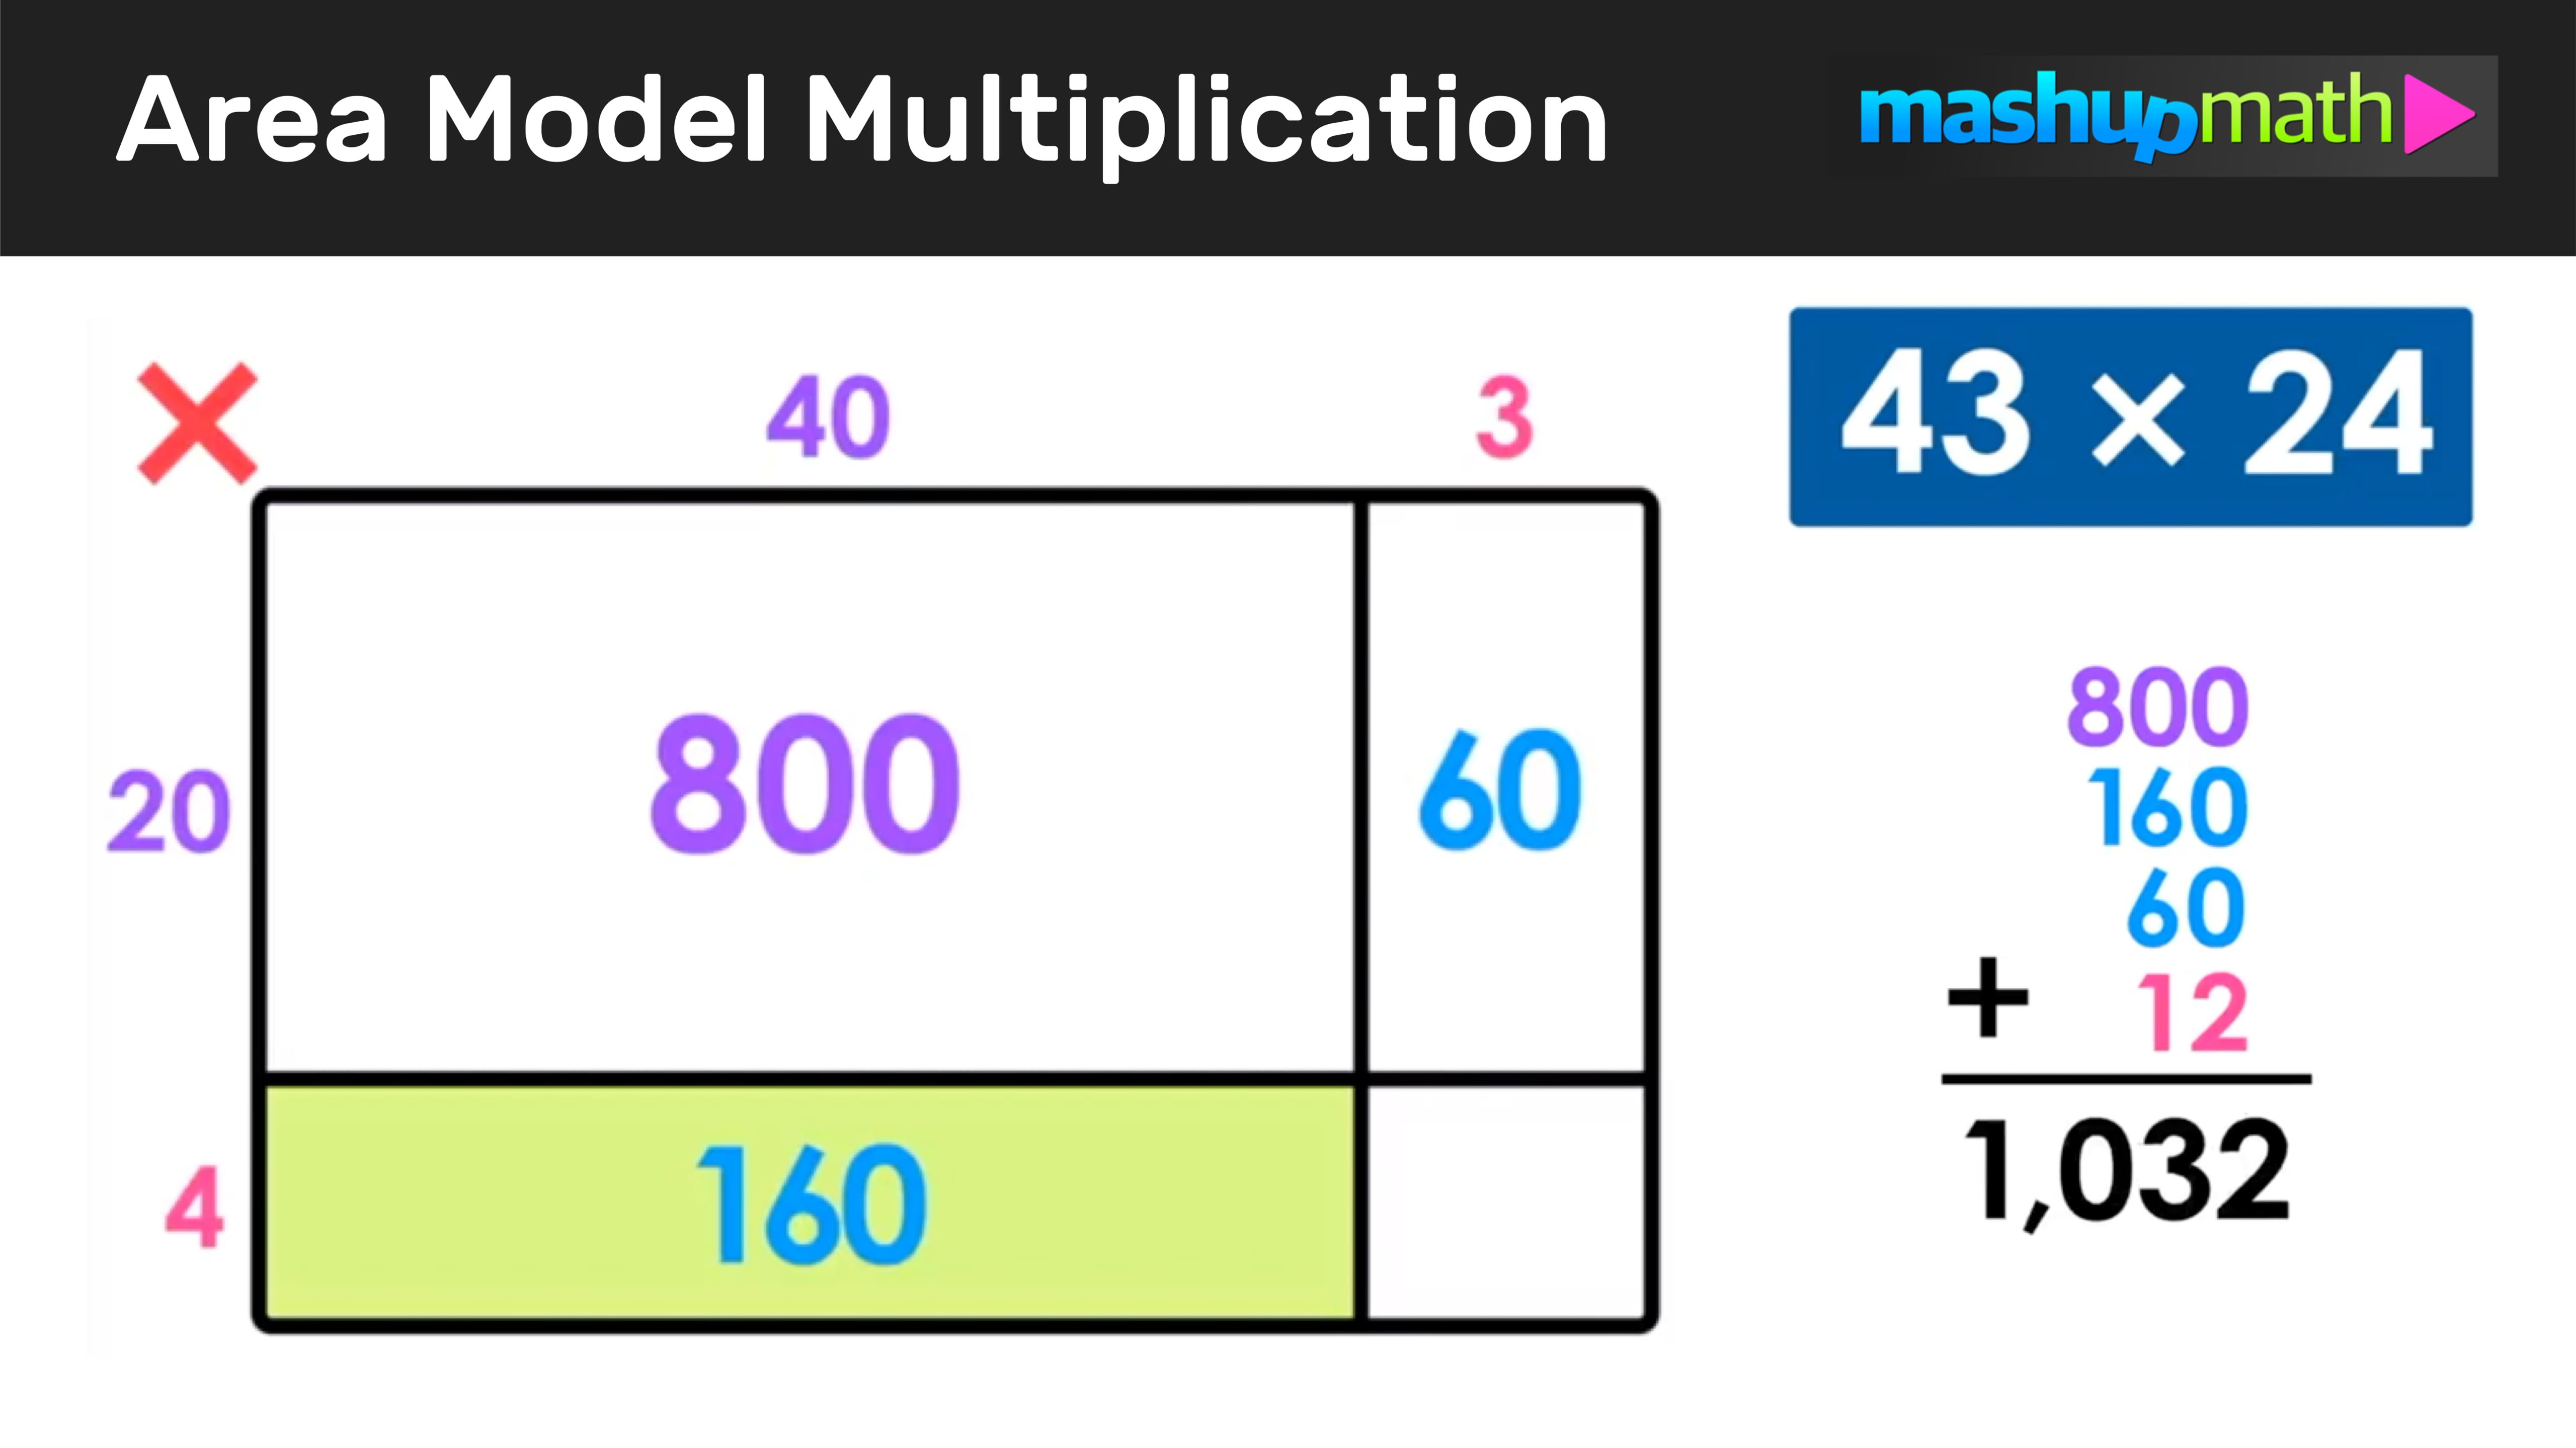 area-model-multiplication-on-vimeo